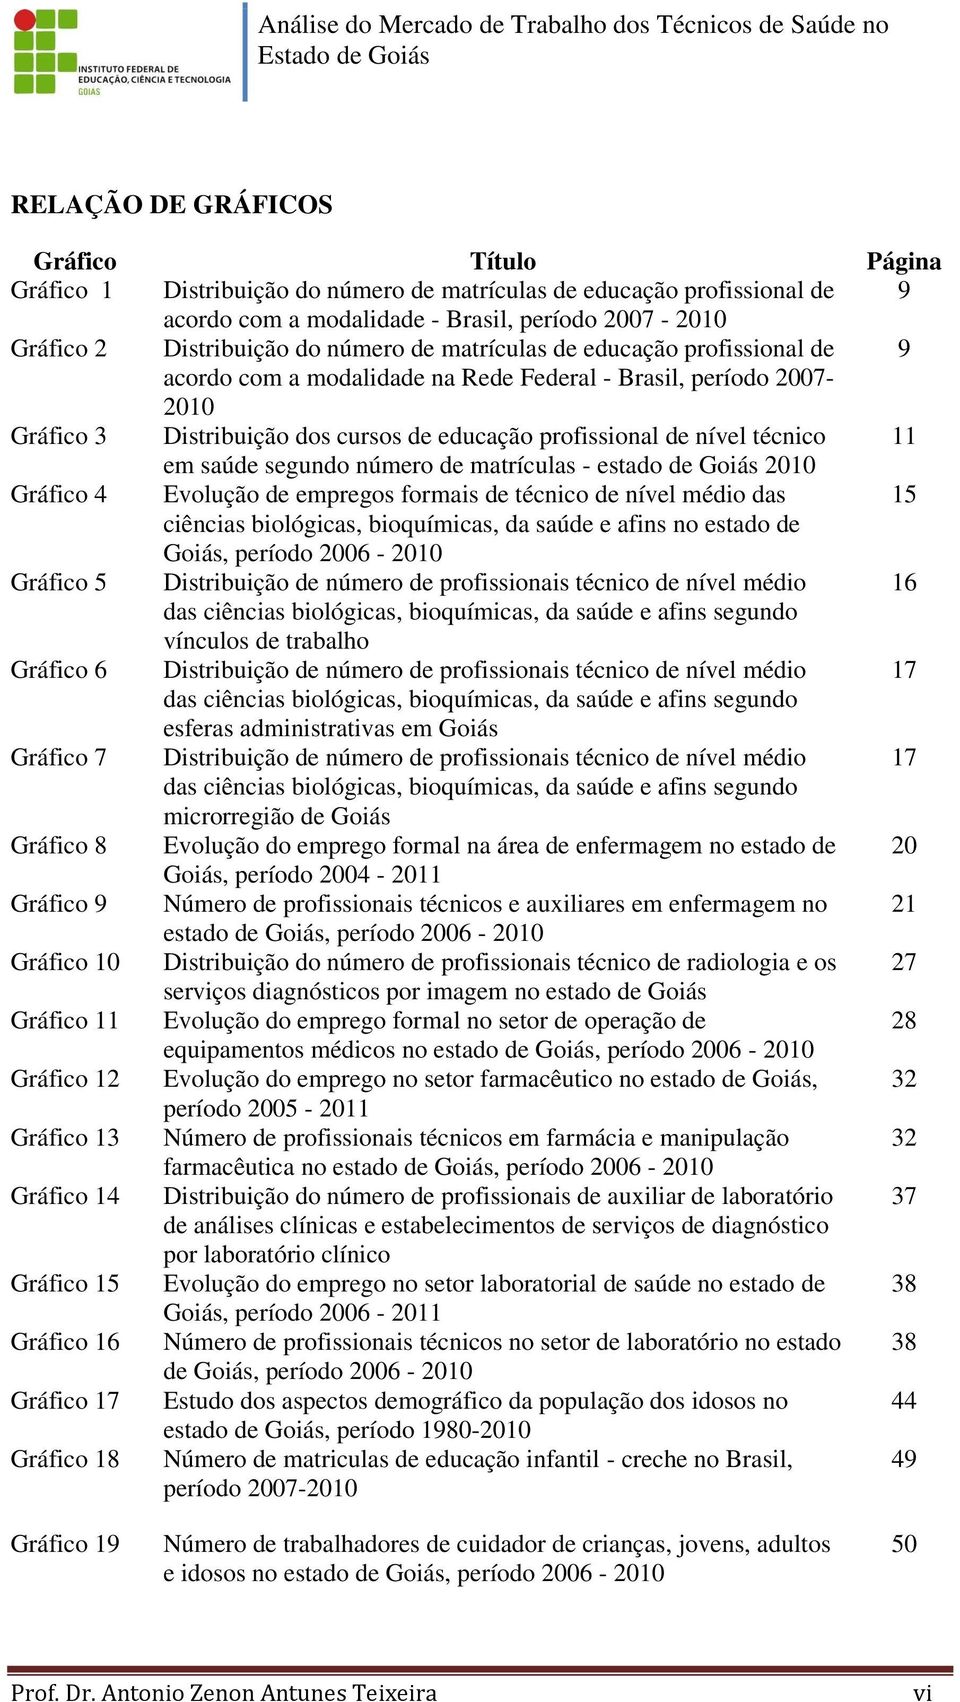 em saúde segundo número de matrículas - estado de Goiás 2010 Gráfico 4 Evolução de empregos formais de técnico de nível médio das 15 ciências biológicas, bioquímicas, da saúde e afins no estado de